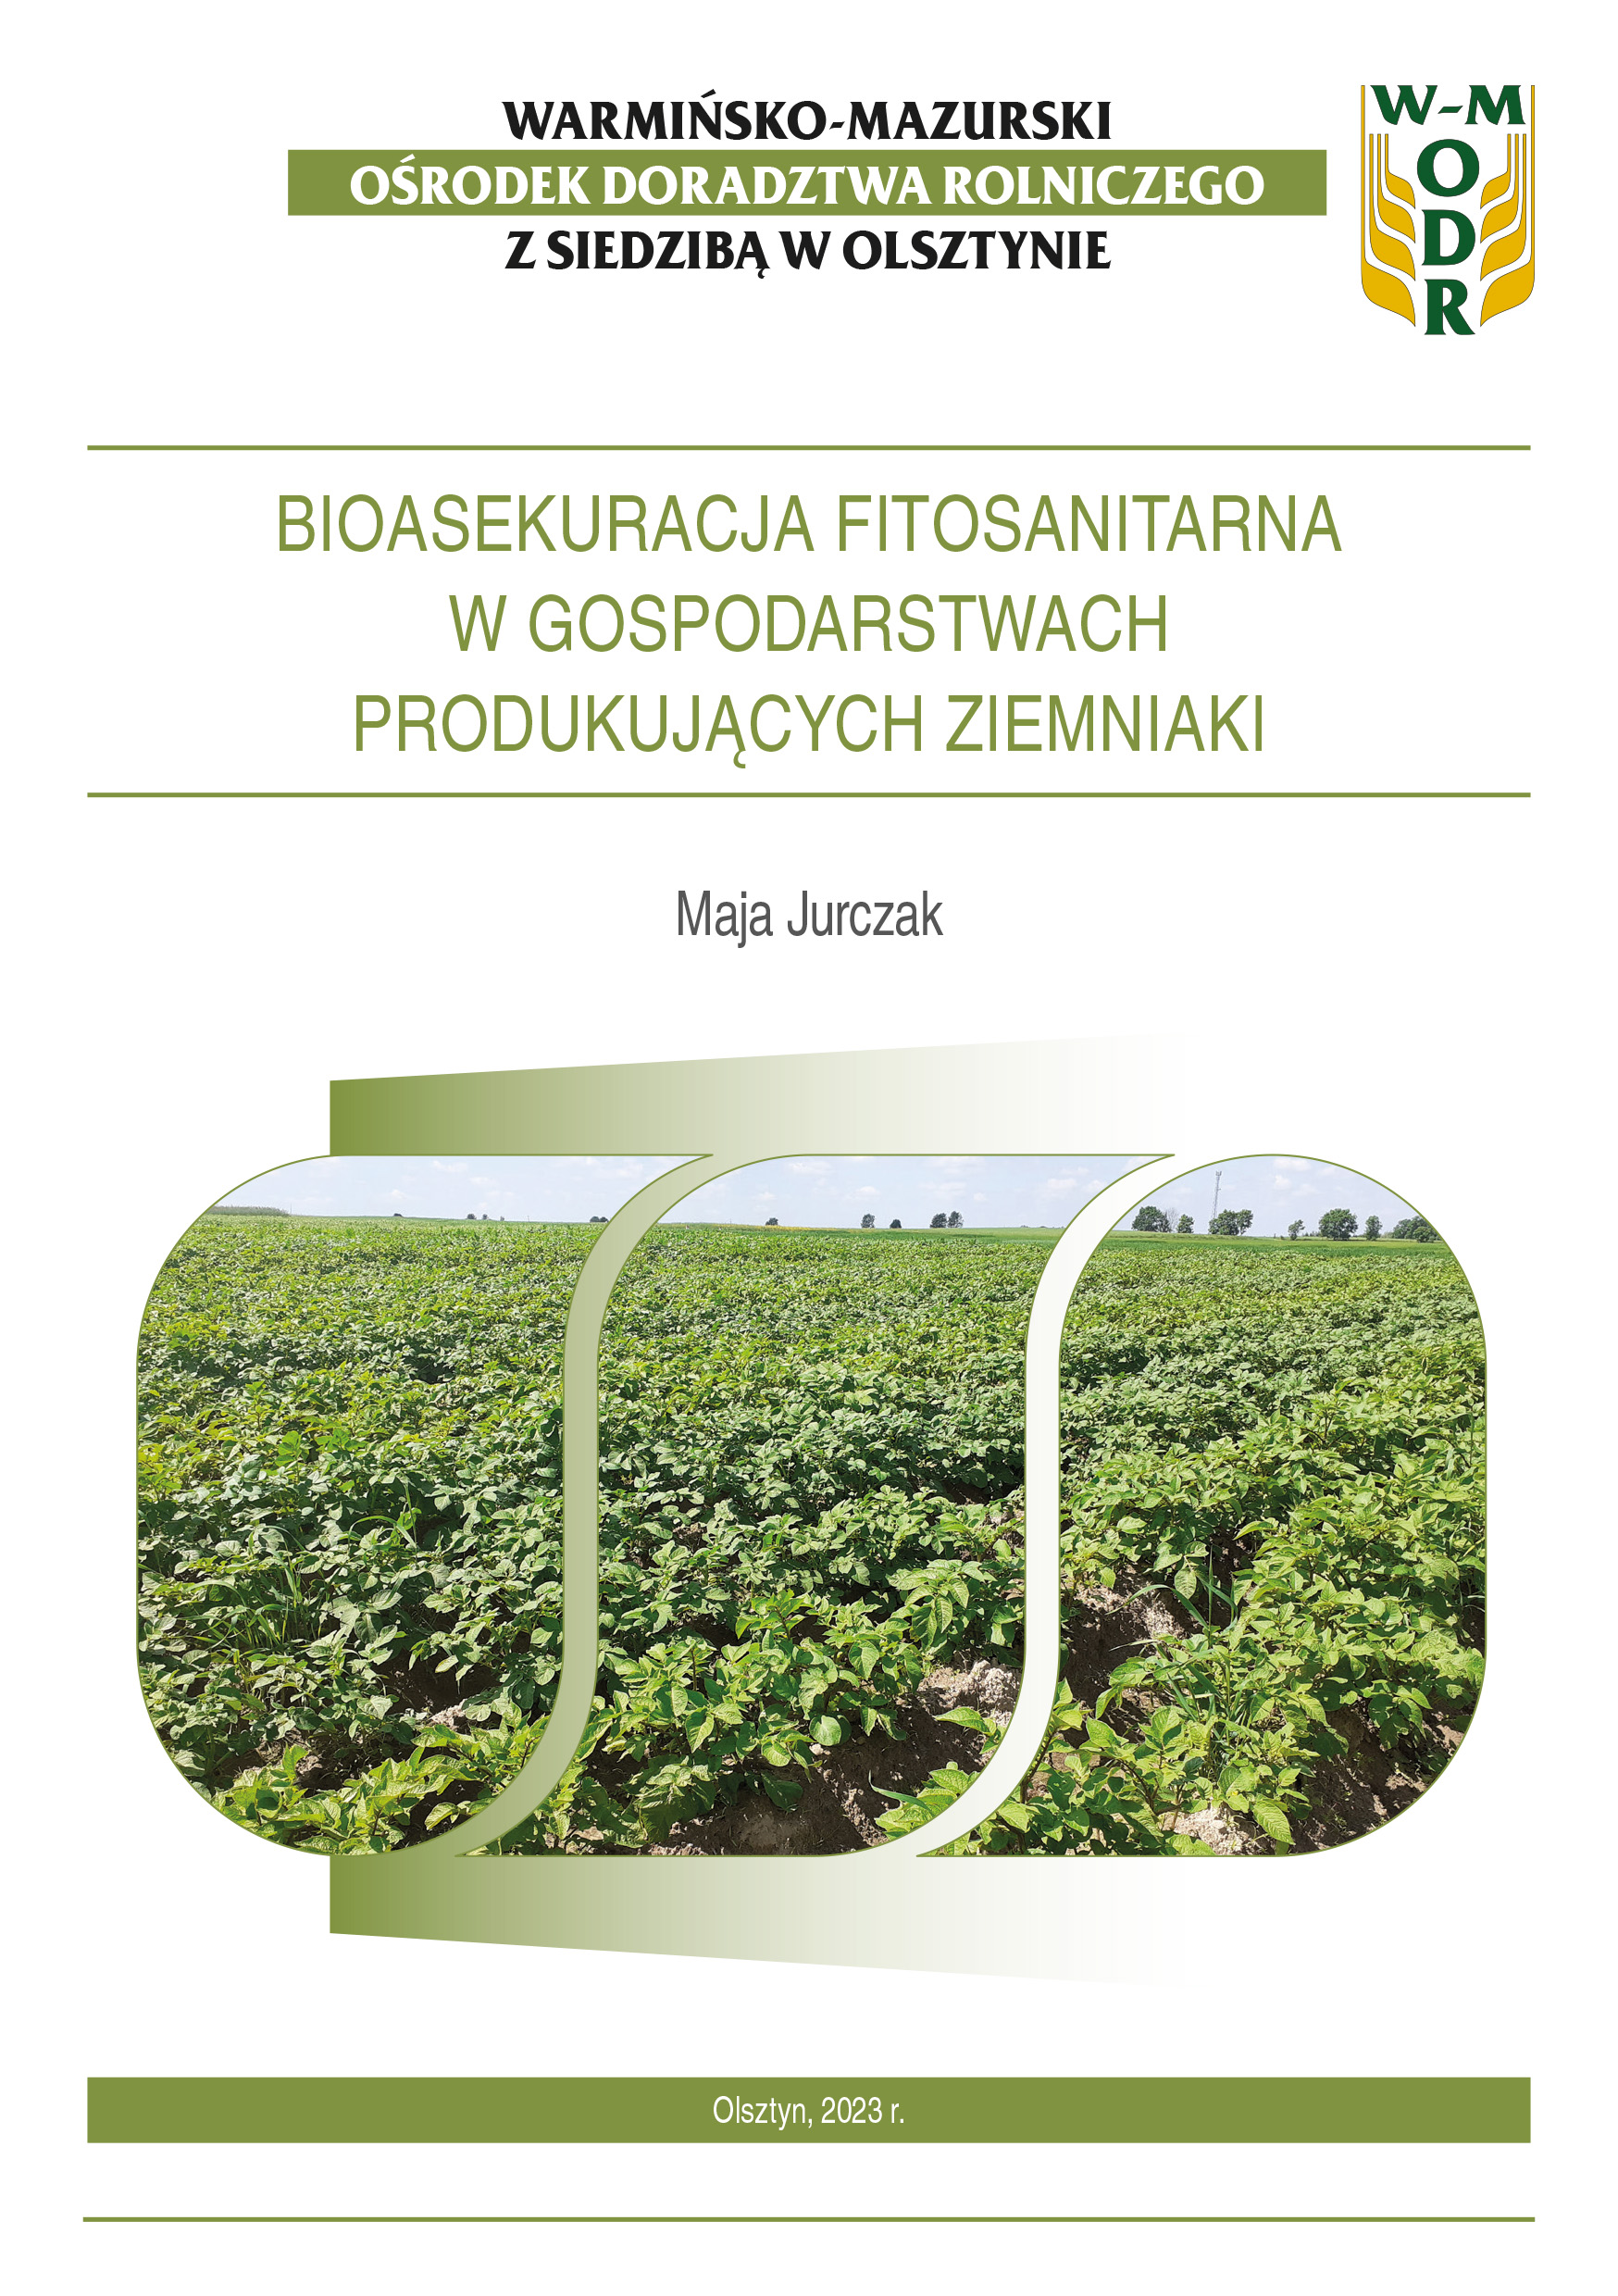 Bioasekuracja fitosanitarna w gospodarstwach produkujących ziemniaki